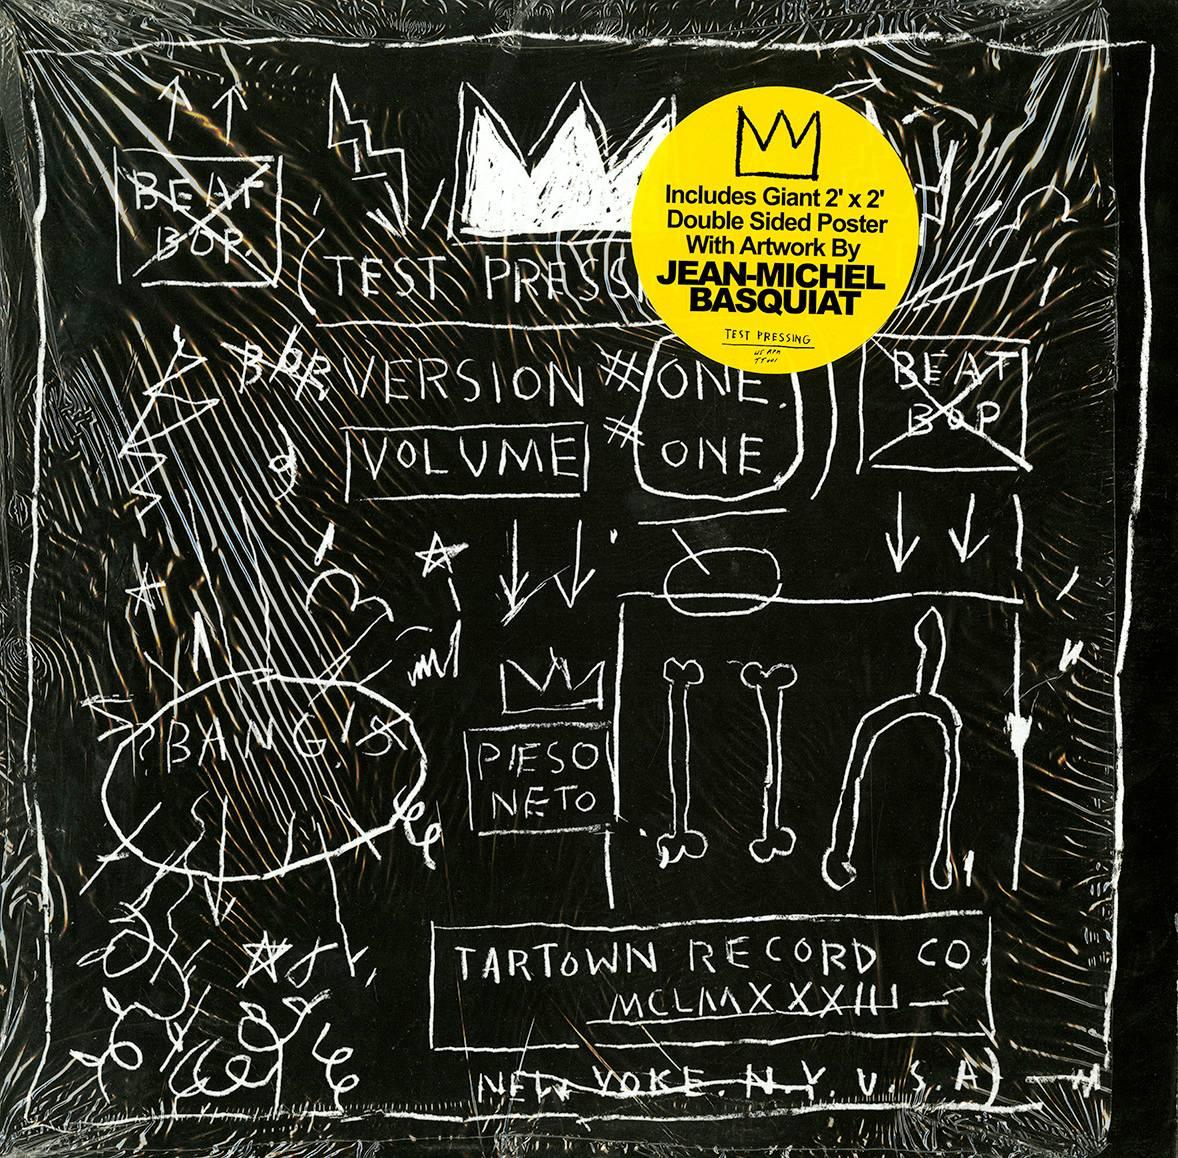 record art et affiche de Basquiat Beatp Bop 1983/2005 ( record art de Basquiat) - Art de Jean-Michel Basquiat